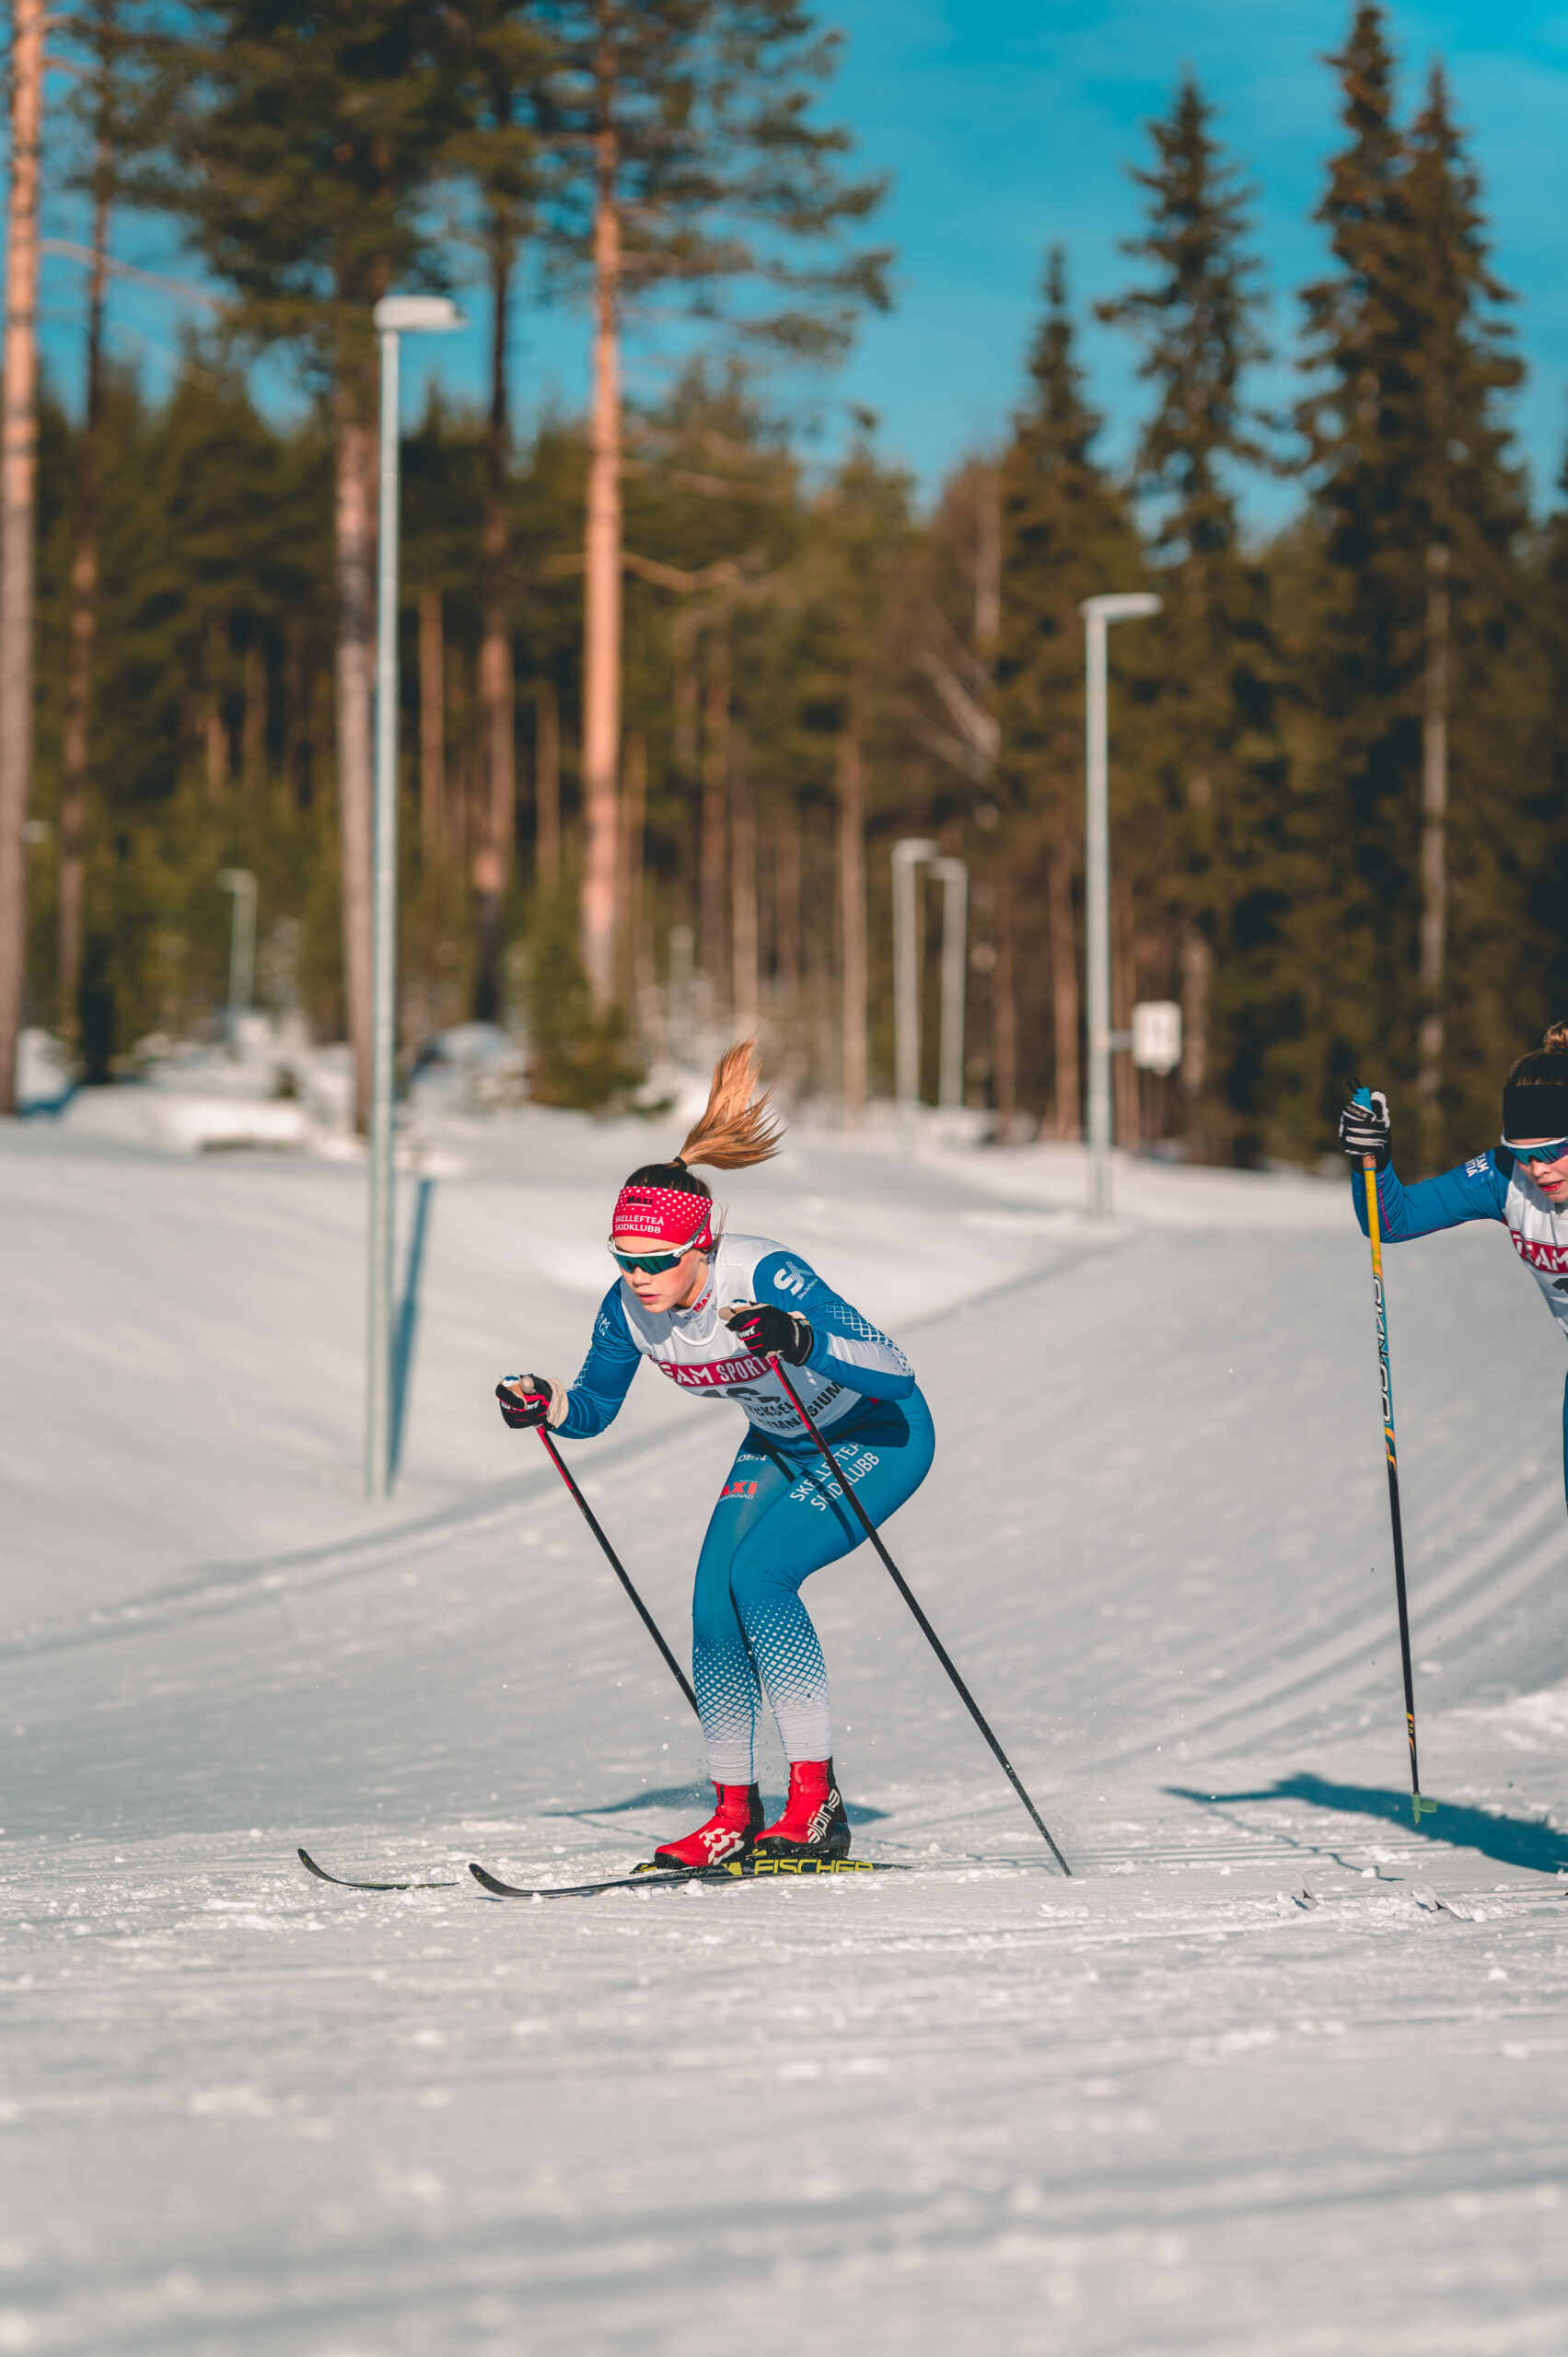 Bilden föreställer en ung tjej som åker skidor.